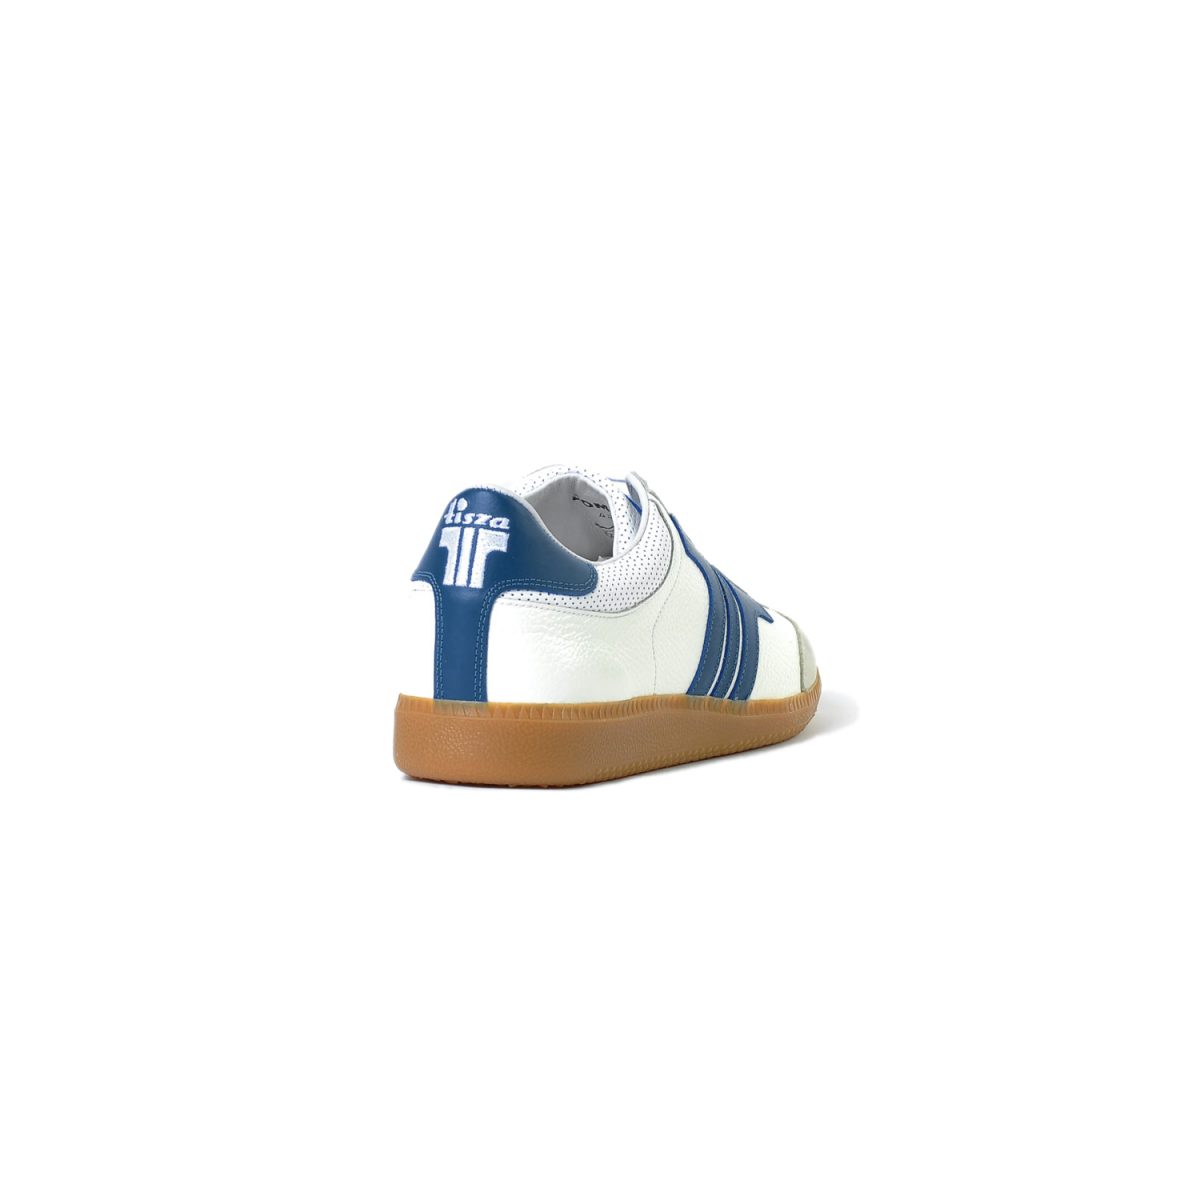 Tisza cipő - Compakt - Fehér-kék